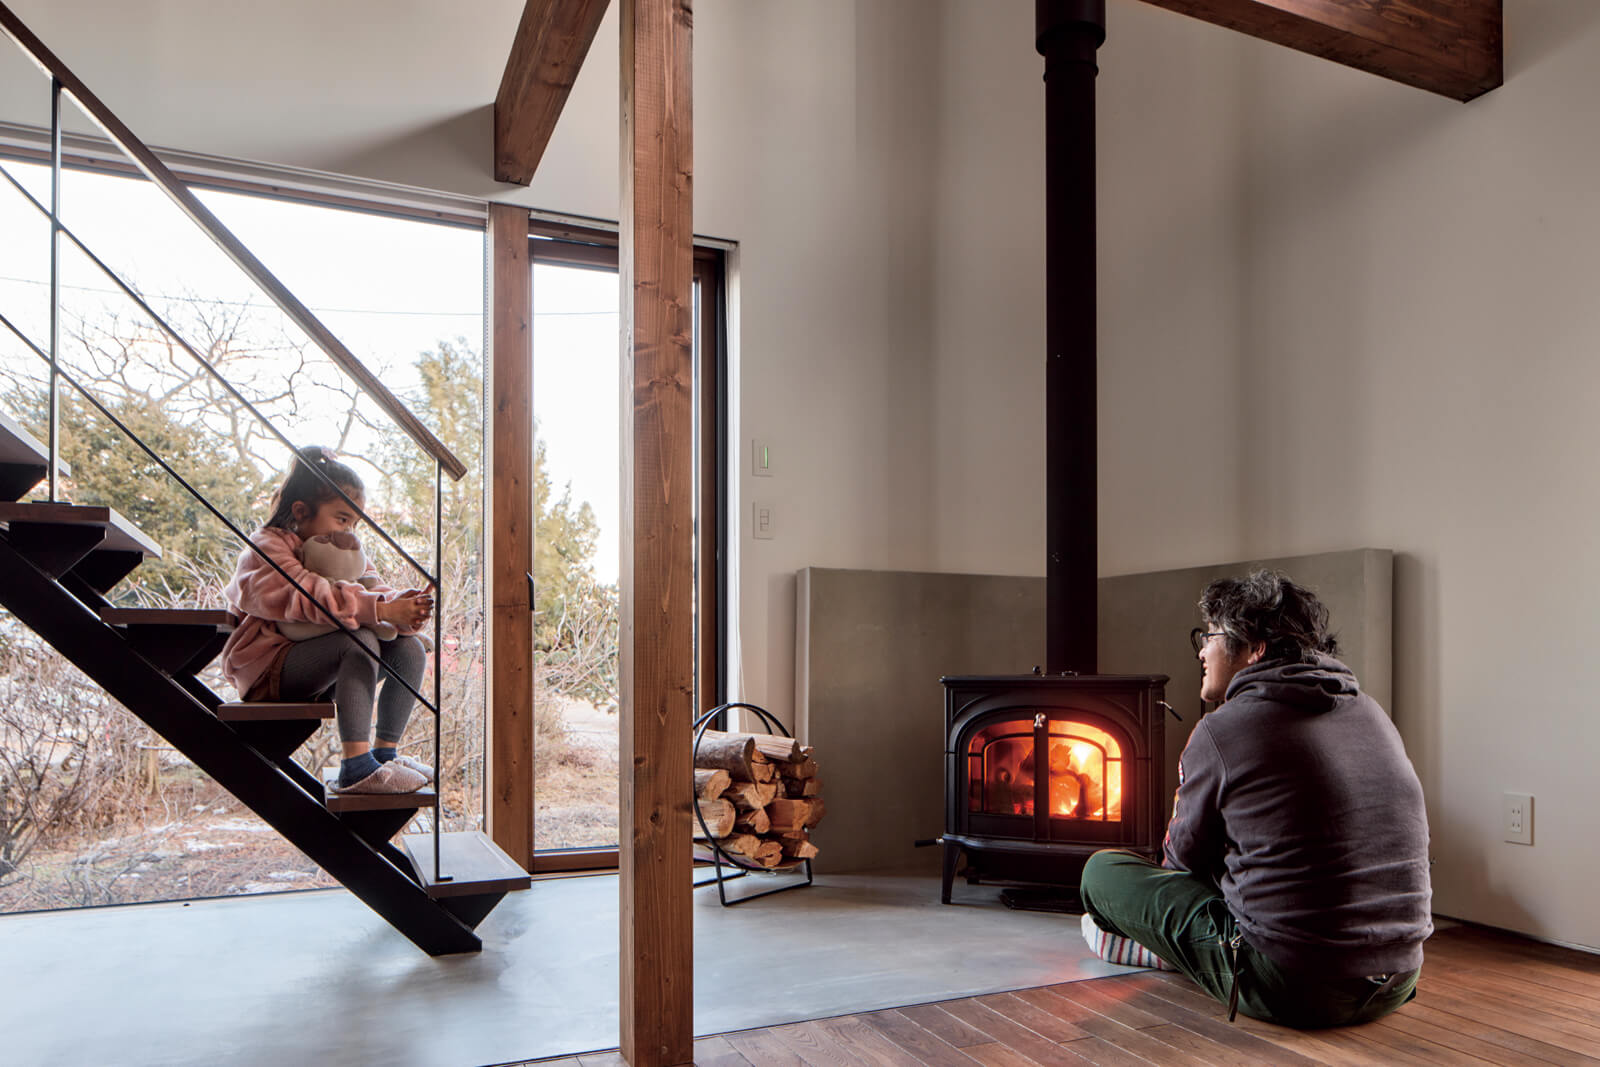 火のある暮らしに憧れて導入した薪ストーブは、調理も楽しめるモデル。テラス窓を介して薪の運び入れができるようになっていて、モルタル仕上げの土間と炉壁が、無垢材と調和しながら空間を引き締める